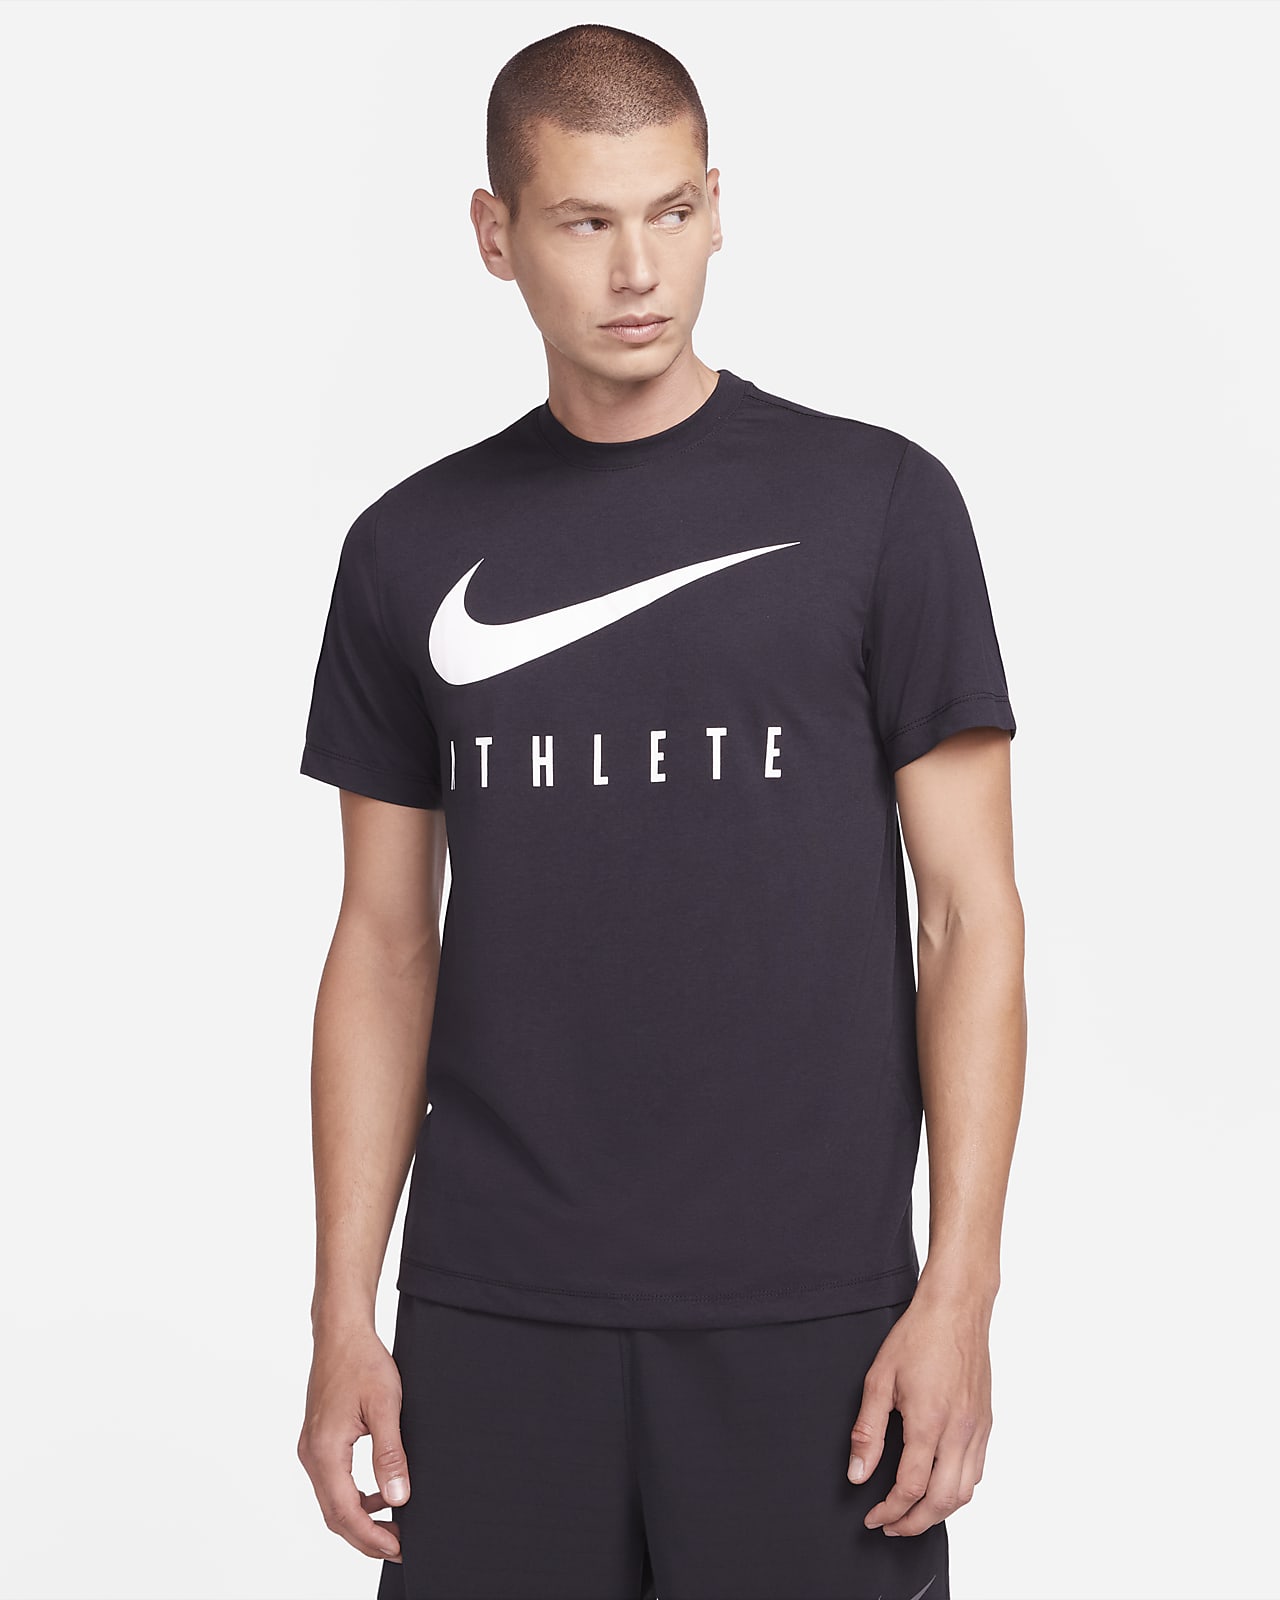 Men's Gym Tops & T-Shirts. Nike UK